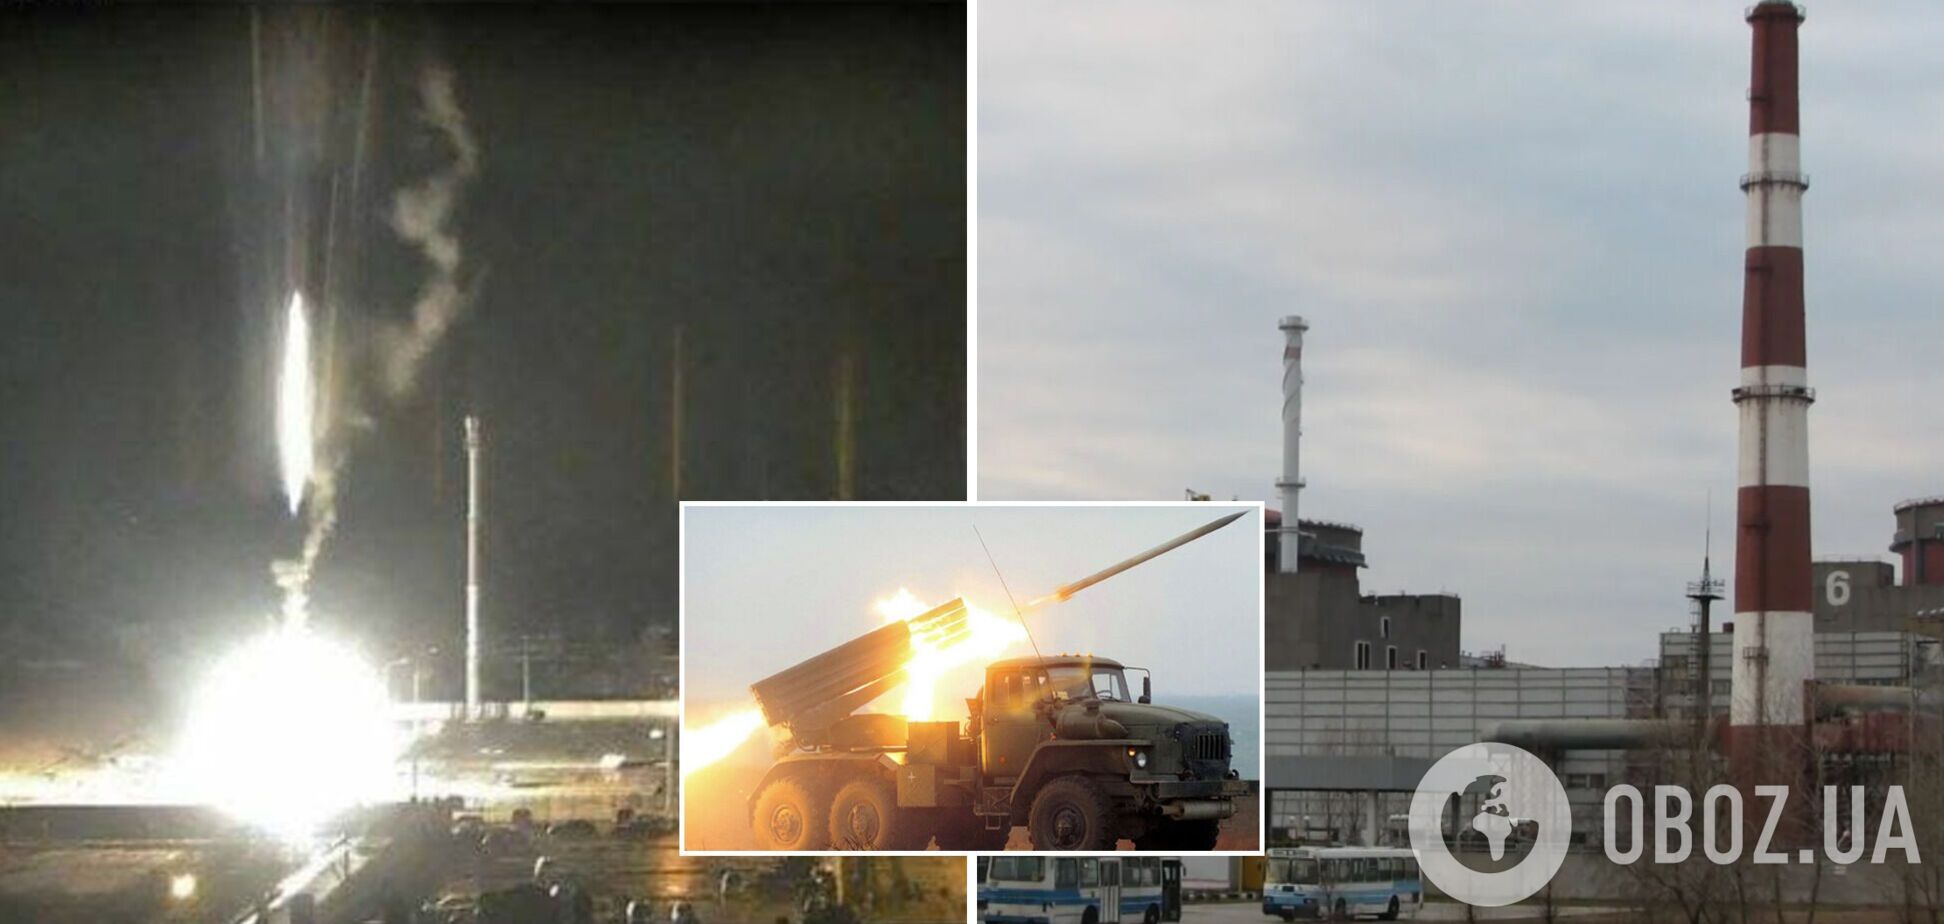 Российские войска обстреляли Запорожскую АЭС, есть угроза ядерной катастрофы. Онлайн-трансляция